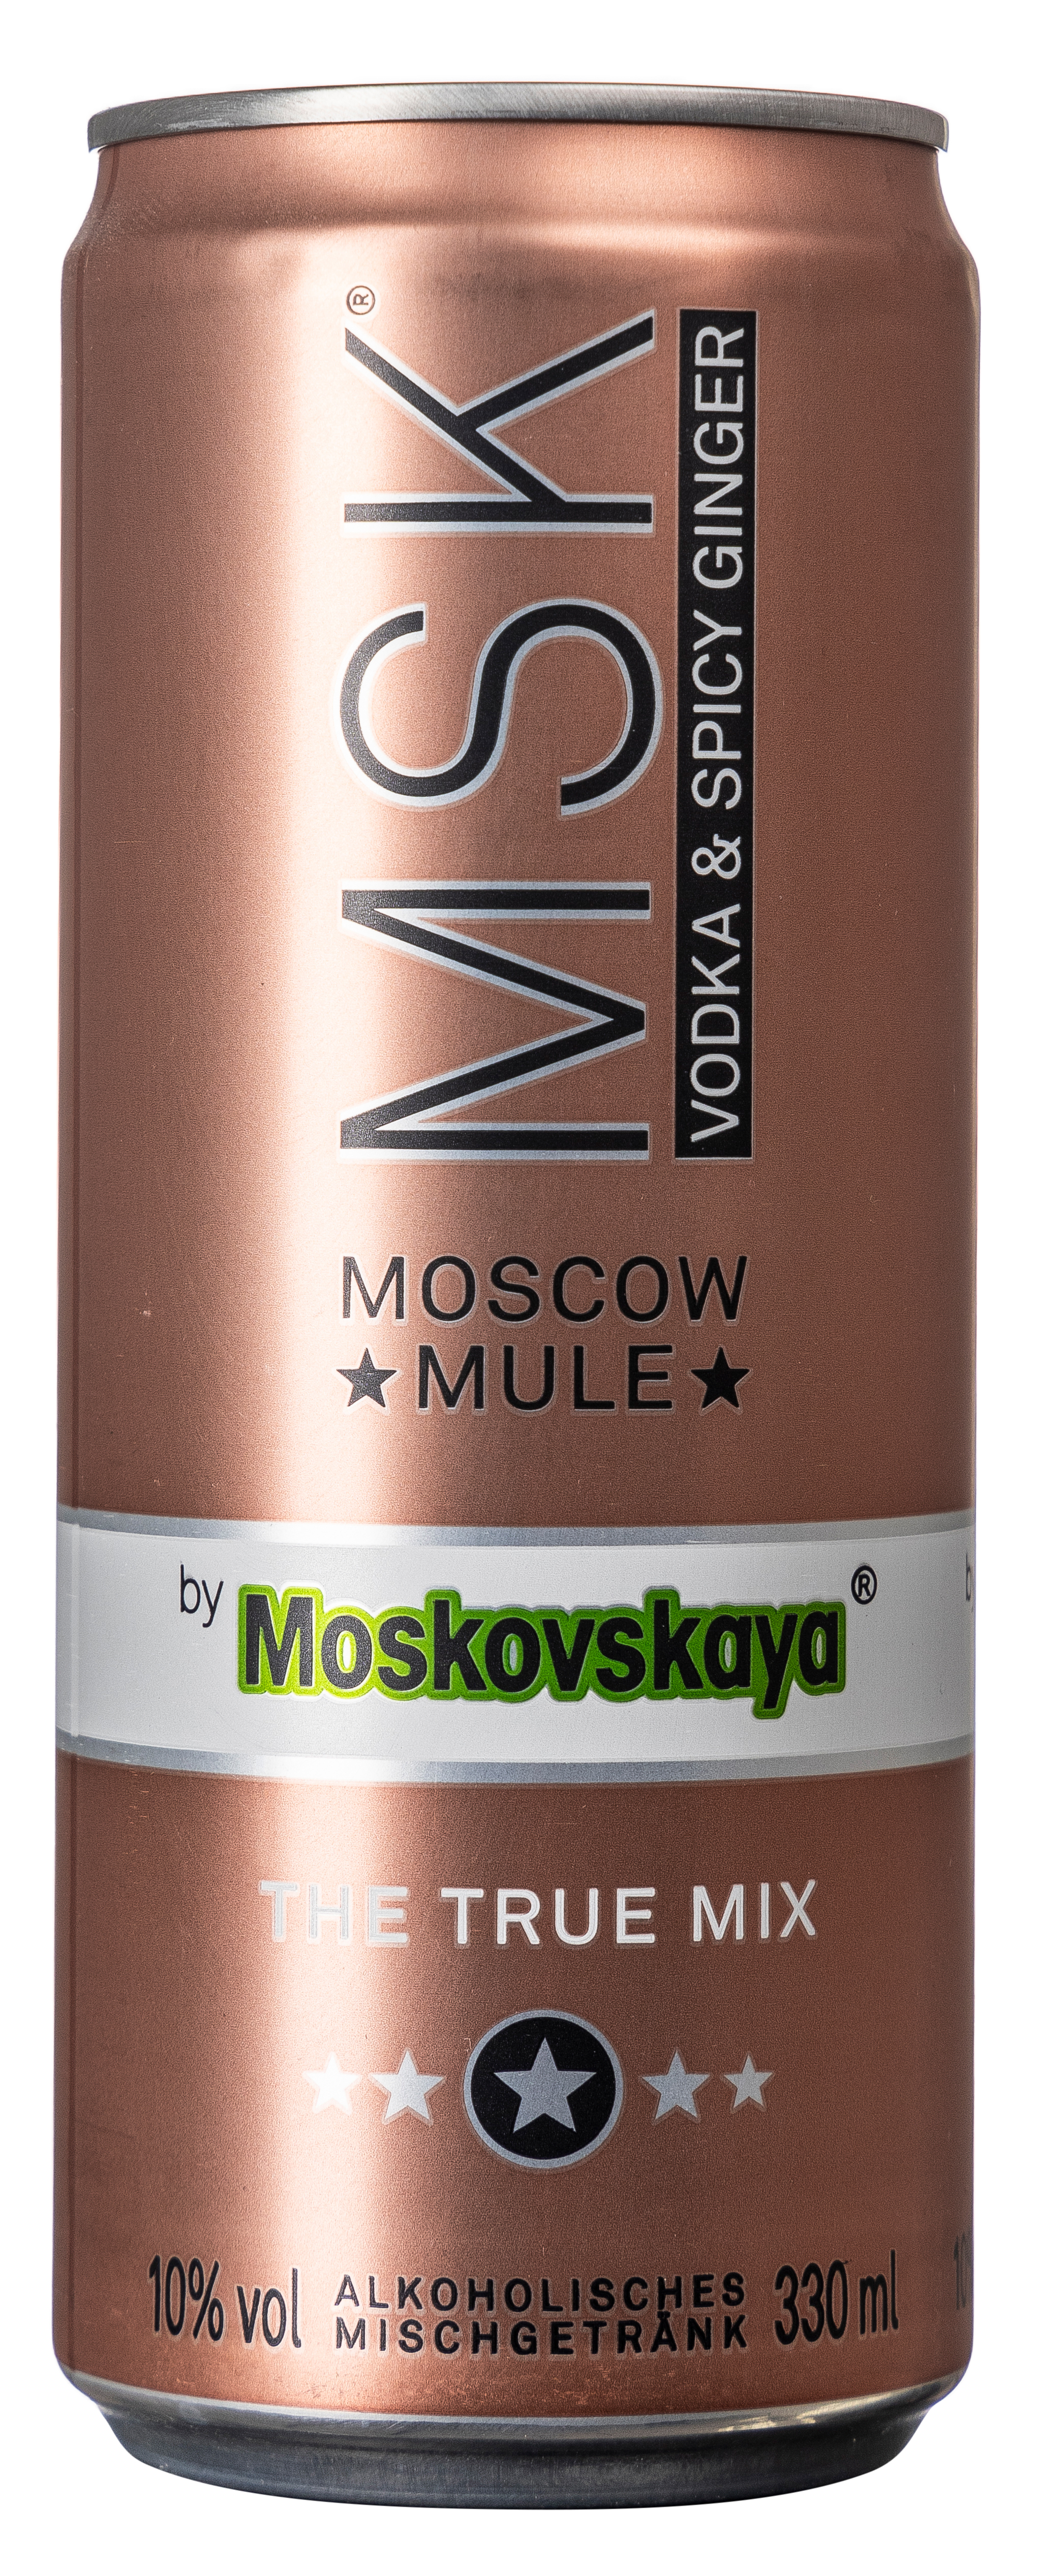 Moskovskaya Moscow Mule 10 % vol. 0,33L EINWEG